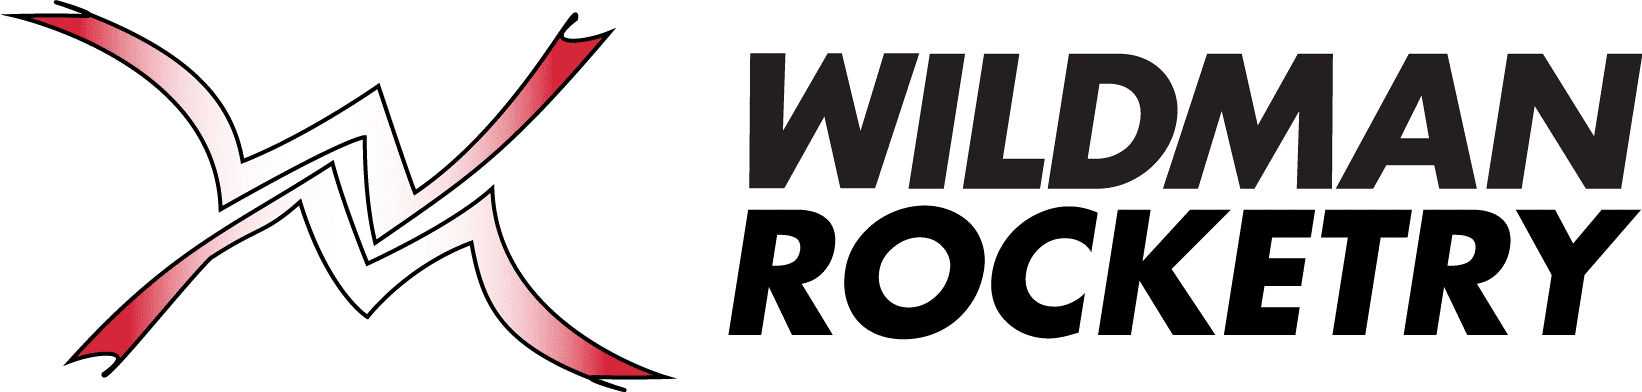 wildmanrocketry.com